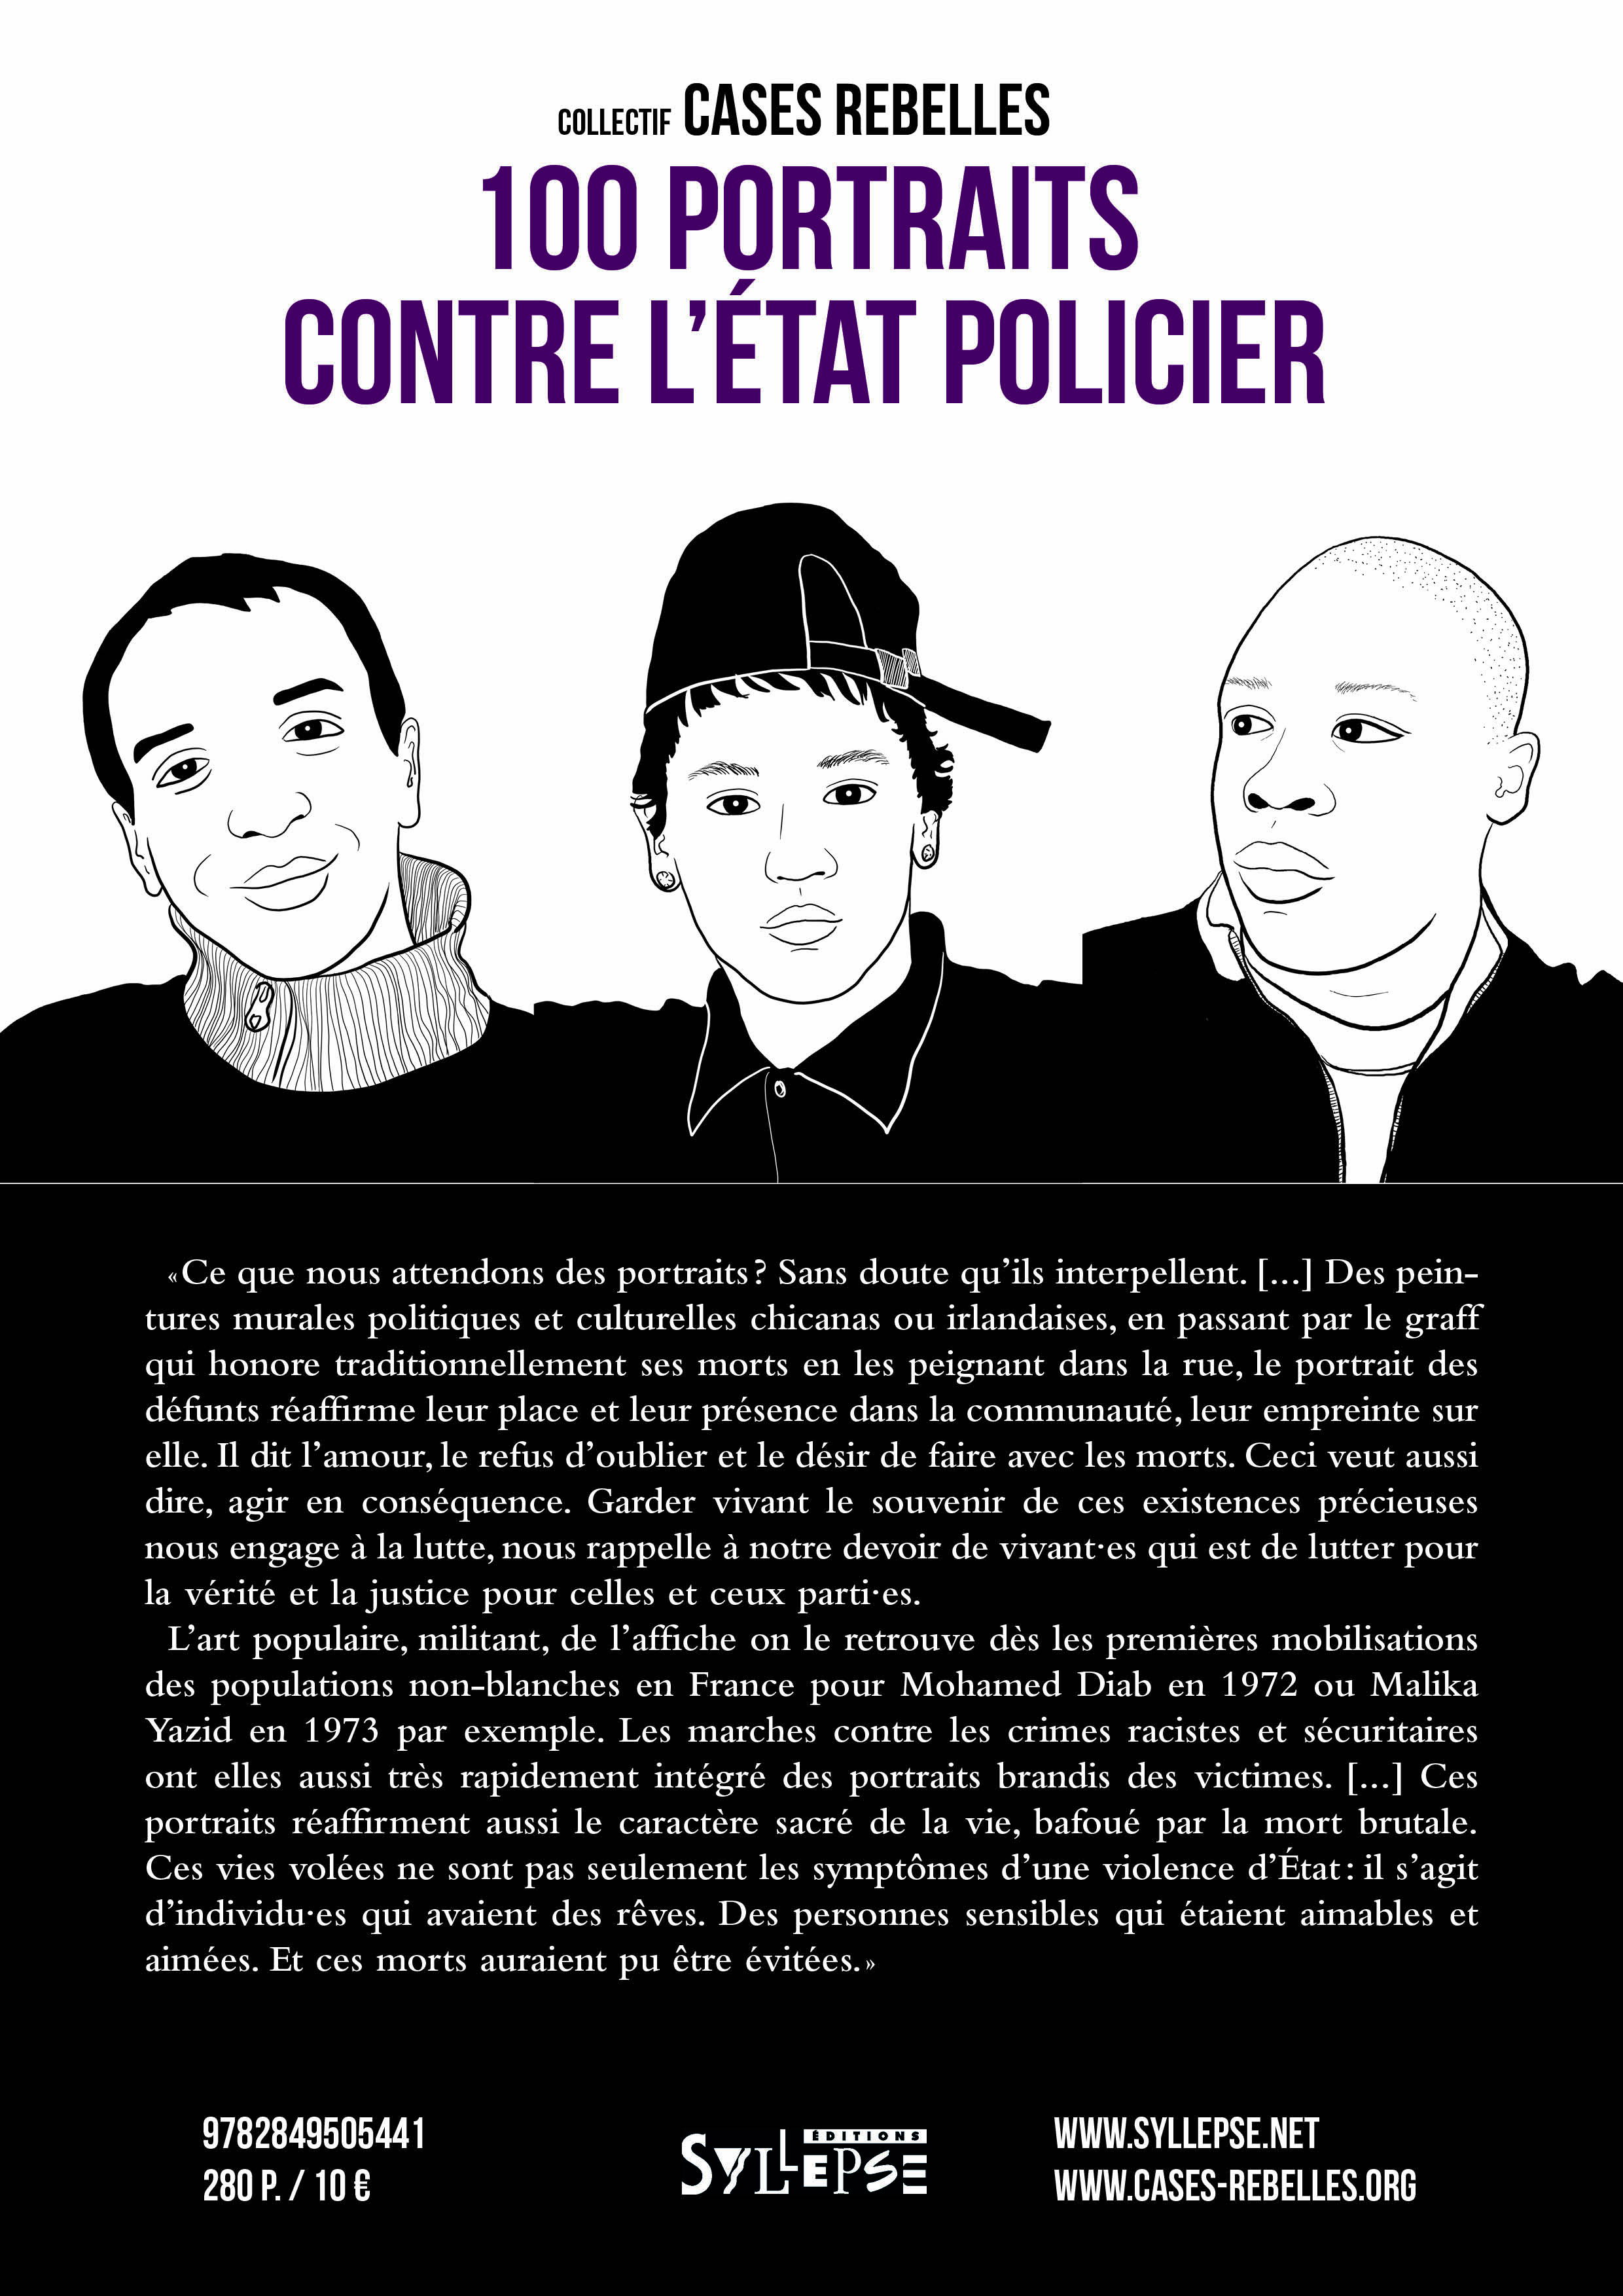 Sortie du livre "100 portraits contre l'état policier" du collectif Cases rebelles